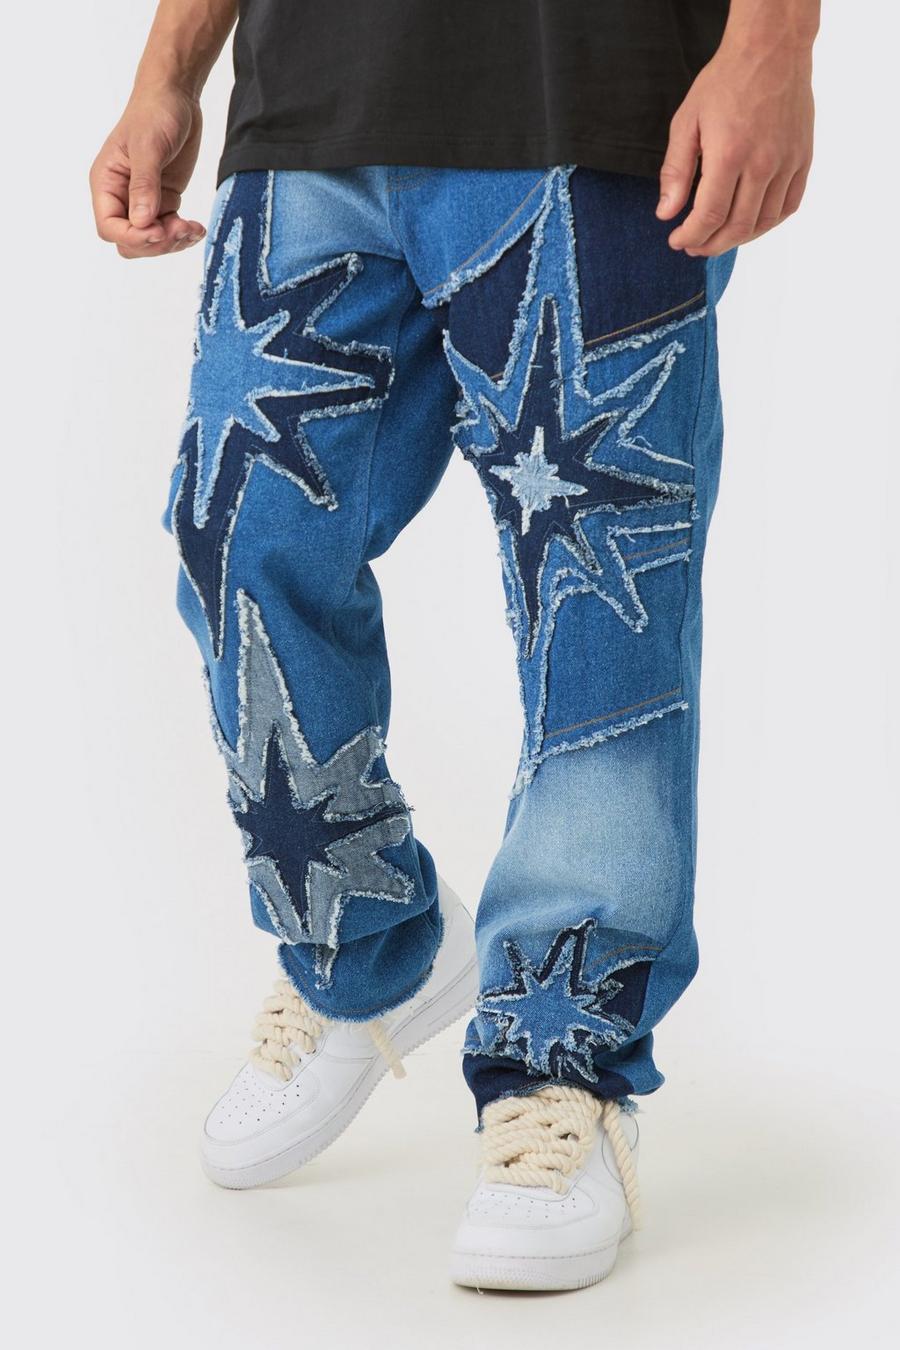 Lockere Jeans in Blau mit Sternen, Ice blue